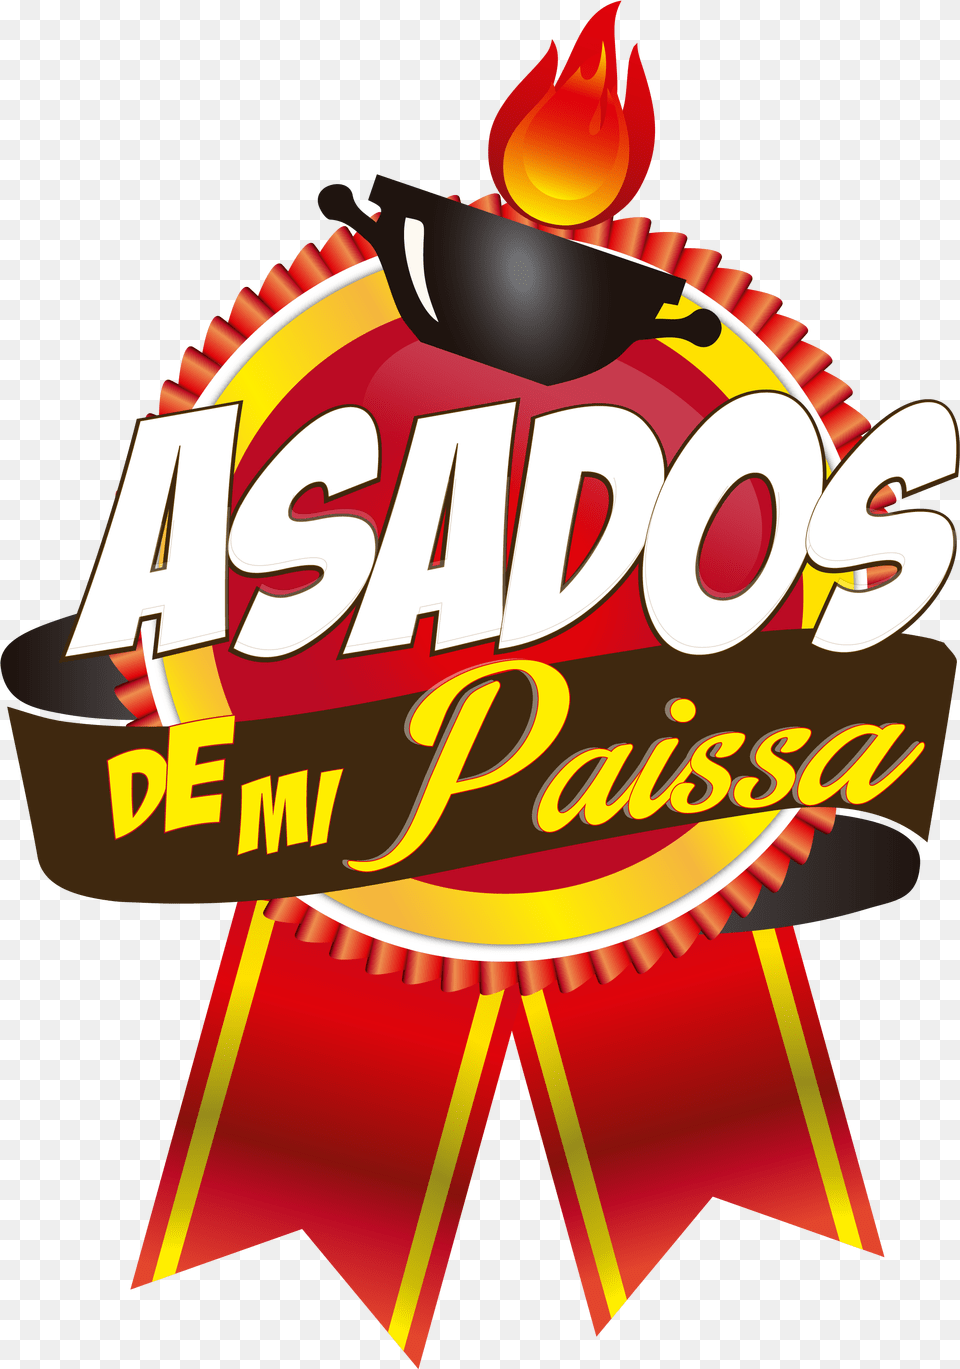 Asados 03 14 May 2018 Carto De Visita Esmalteria, Circus, Leisure Activities, Logo, Dynamite Free Png